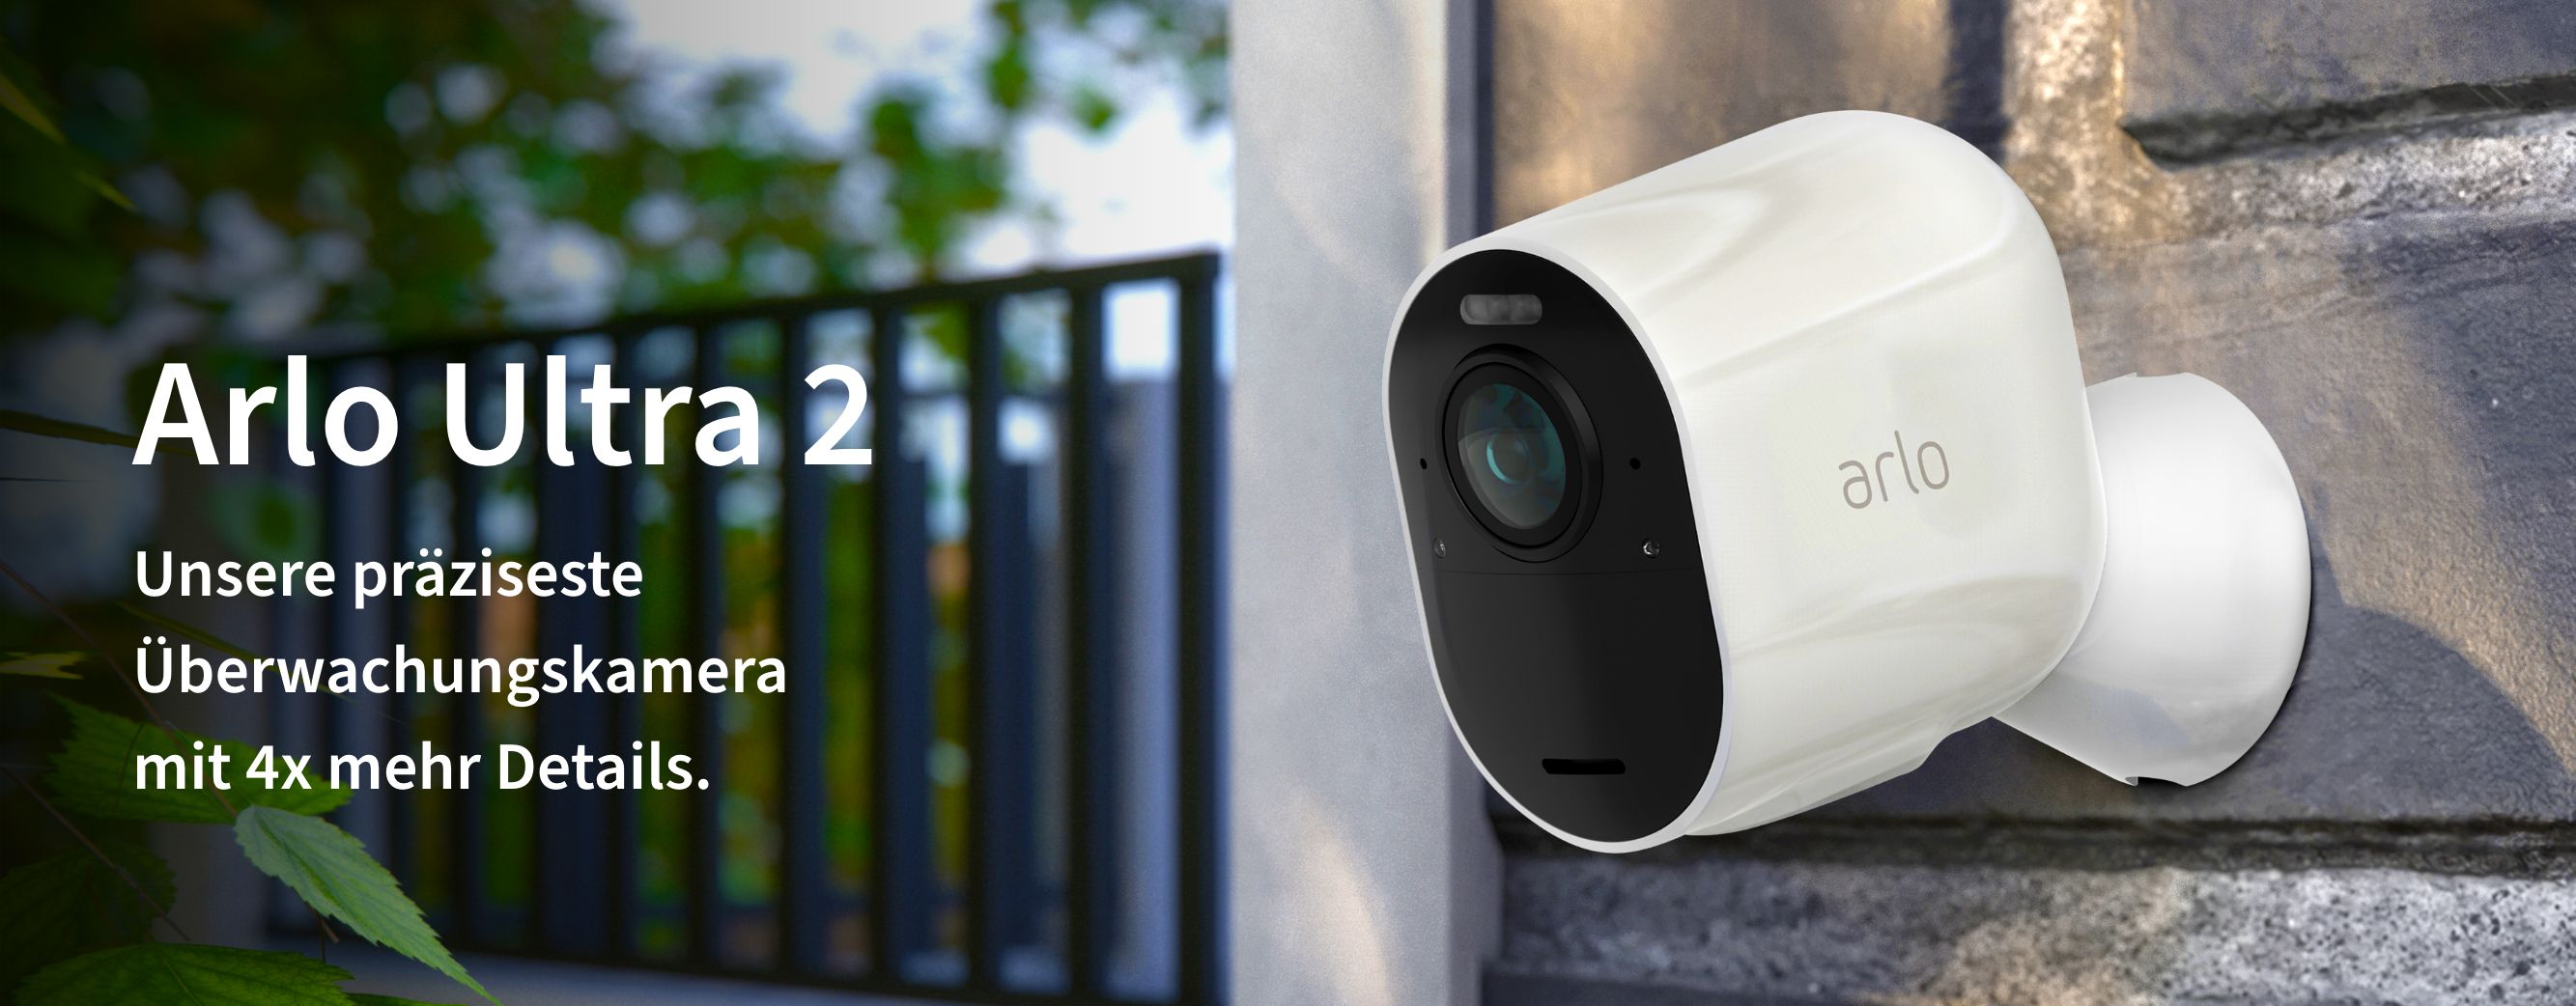 Weiße Arlo Ultra 2 -Kamera an einer Wand draußen, Arlo's fortschrittlichste Überwachungskamera